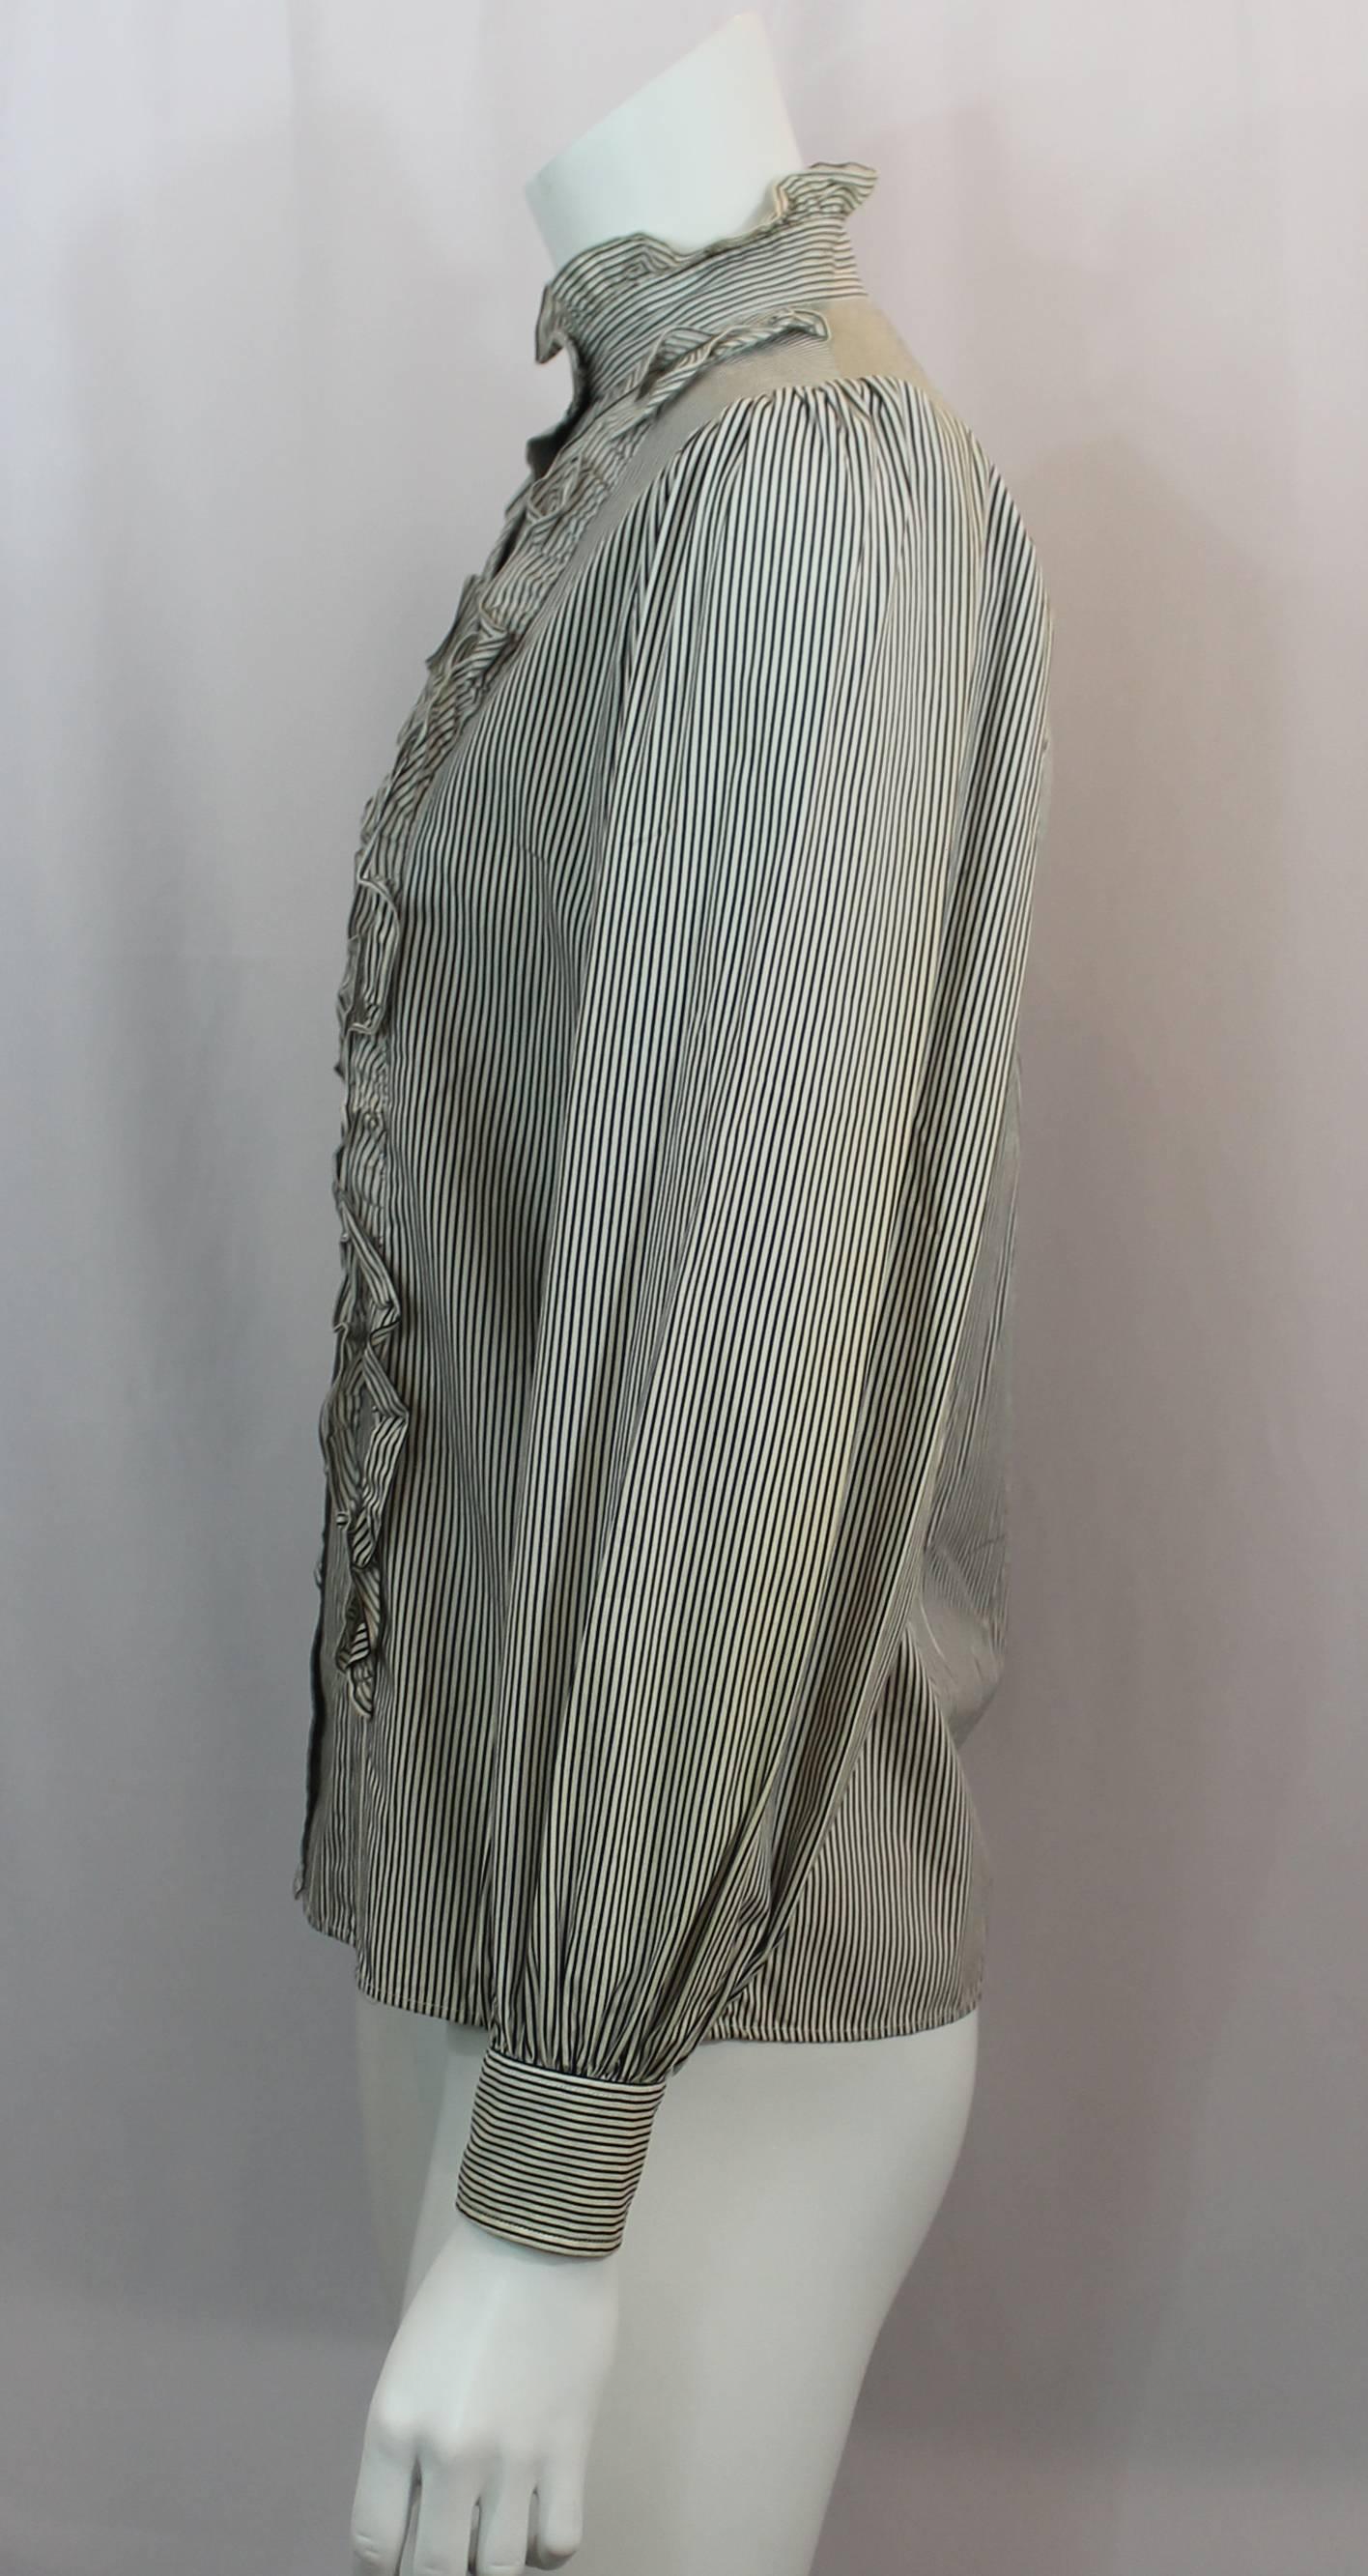 Yves Saint Laurent Vintage Ivory and Black Thin Striped Cotton Button Up Shirt - 36 - 1960's. Cette chemise vintage à manches longues, en coton, est ivoire et noire avec de fines rayures verticales. Il y a des volants sur le col et de chaque côté